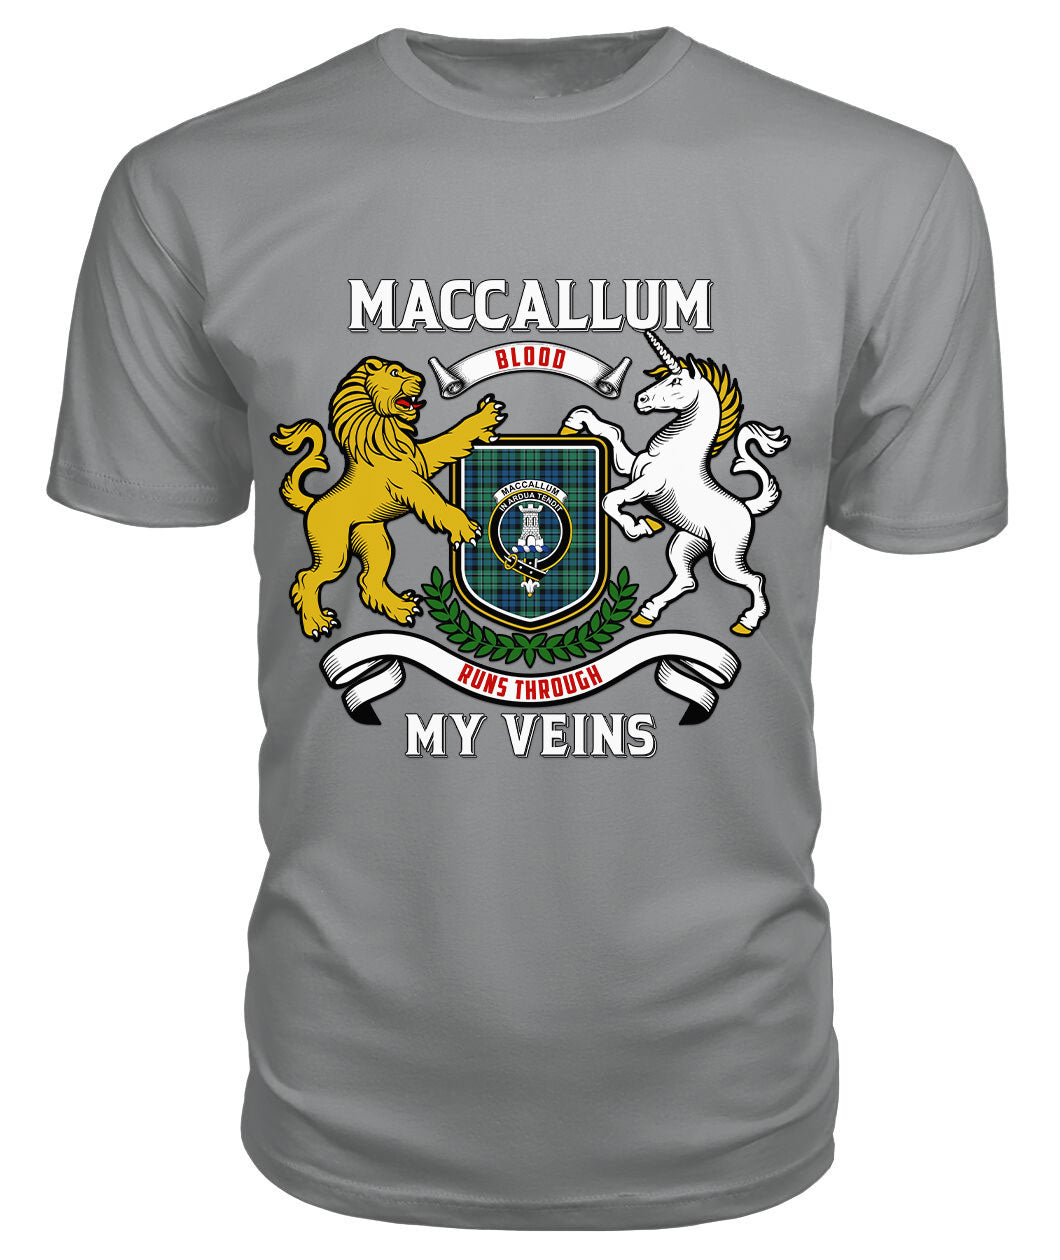 MacCallum Ancient Tartan Crest 2D T-shirt - Blood Runs Through My Veins Style